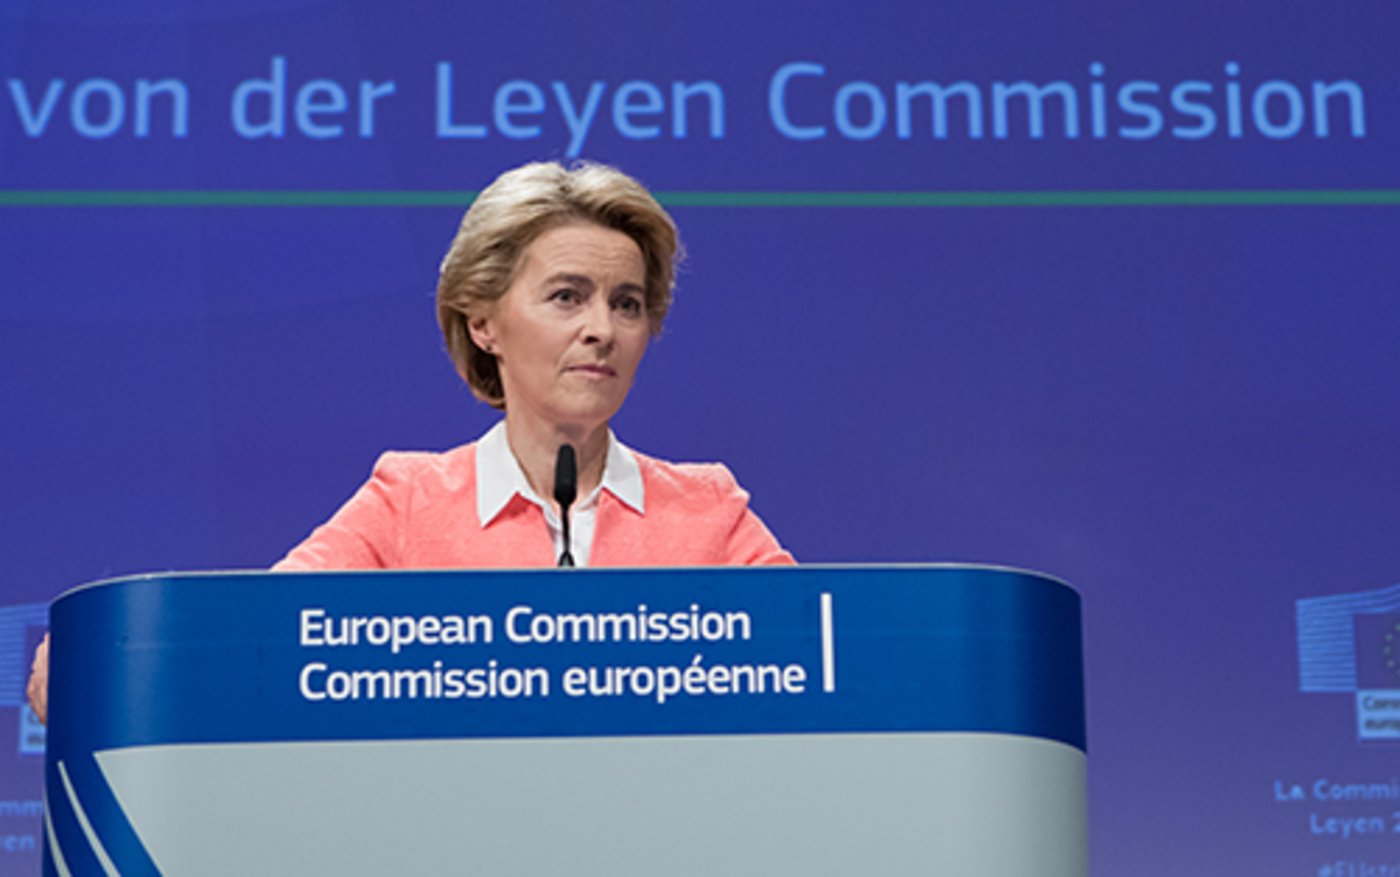 Von-der-Leyen-Kommission vor dem Amtsantritt (cepAdhoc)